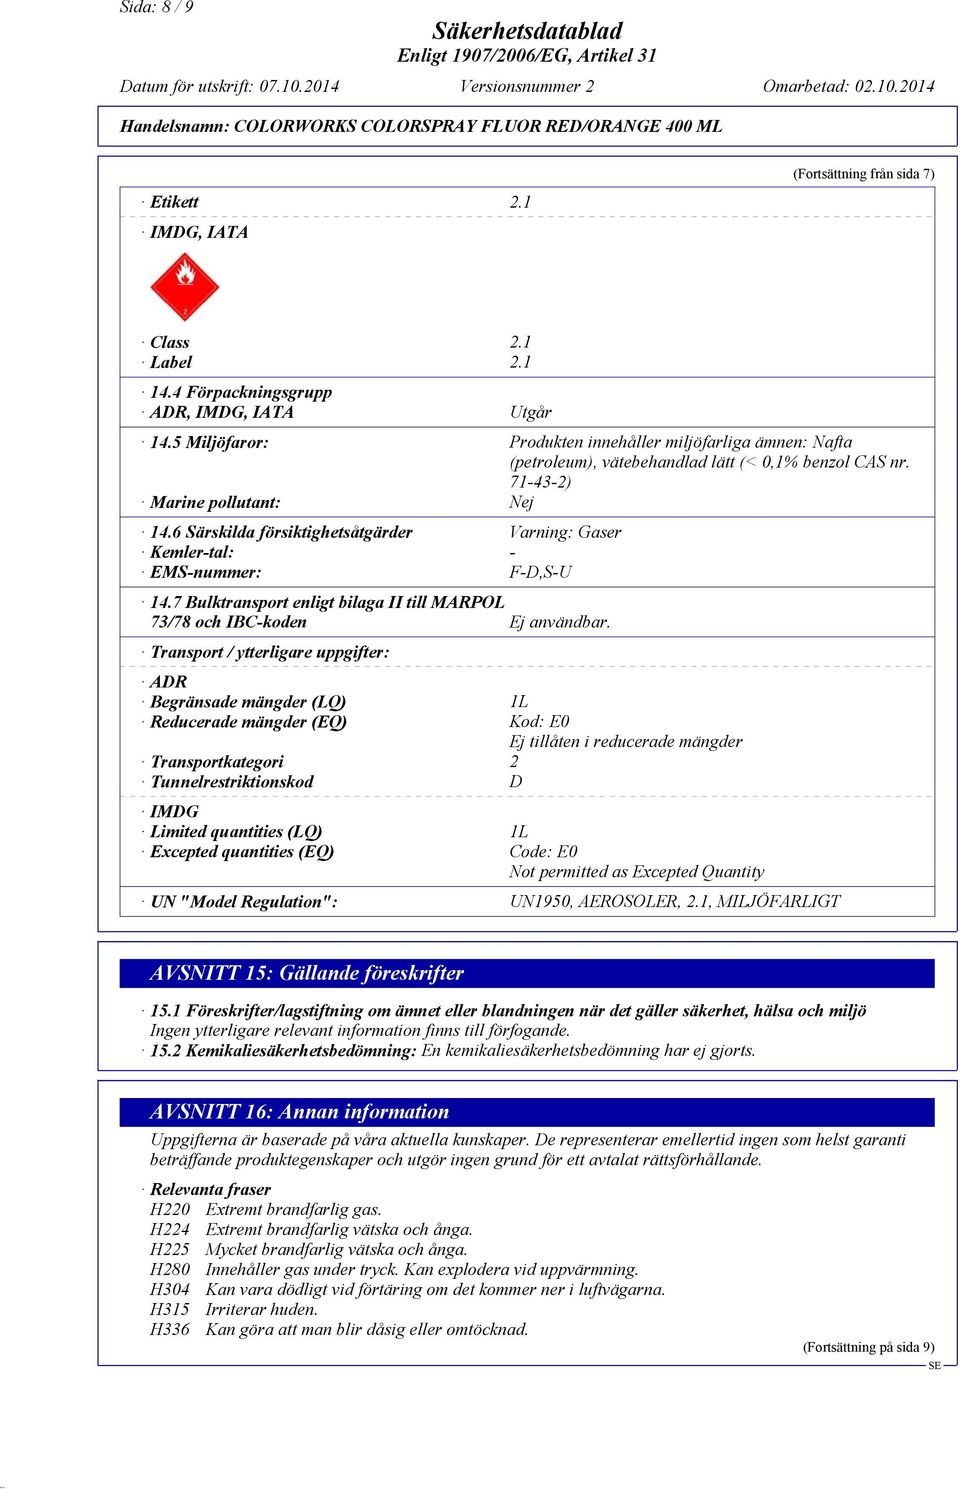 6 Särskilda försiktighetsåtgärder Varning: Gaser Kemler-tal: - EMS-nummer: F-D,S-U 14.7 Bulktransport enligt bilaga II till MARPOL 73/78 och IBC-koden Ej användbar.